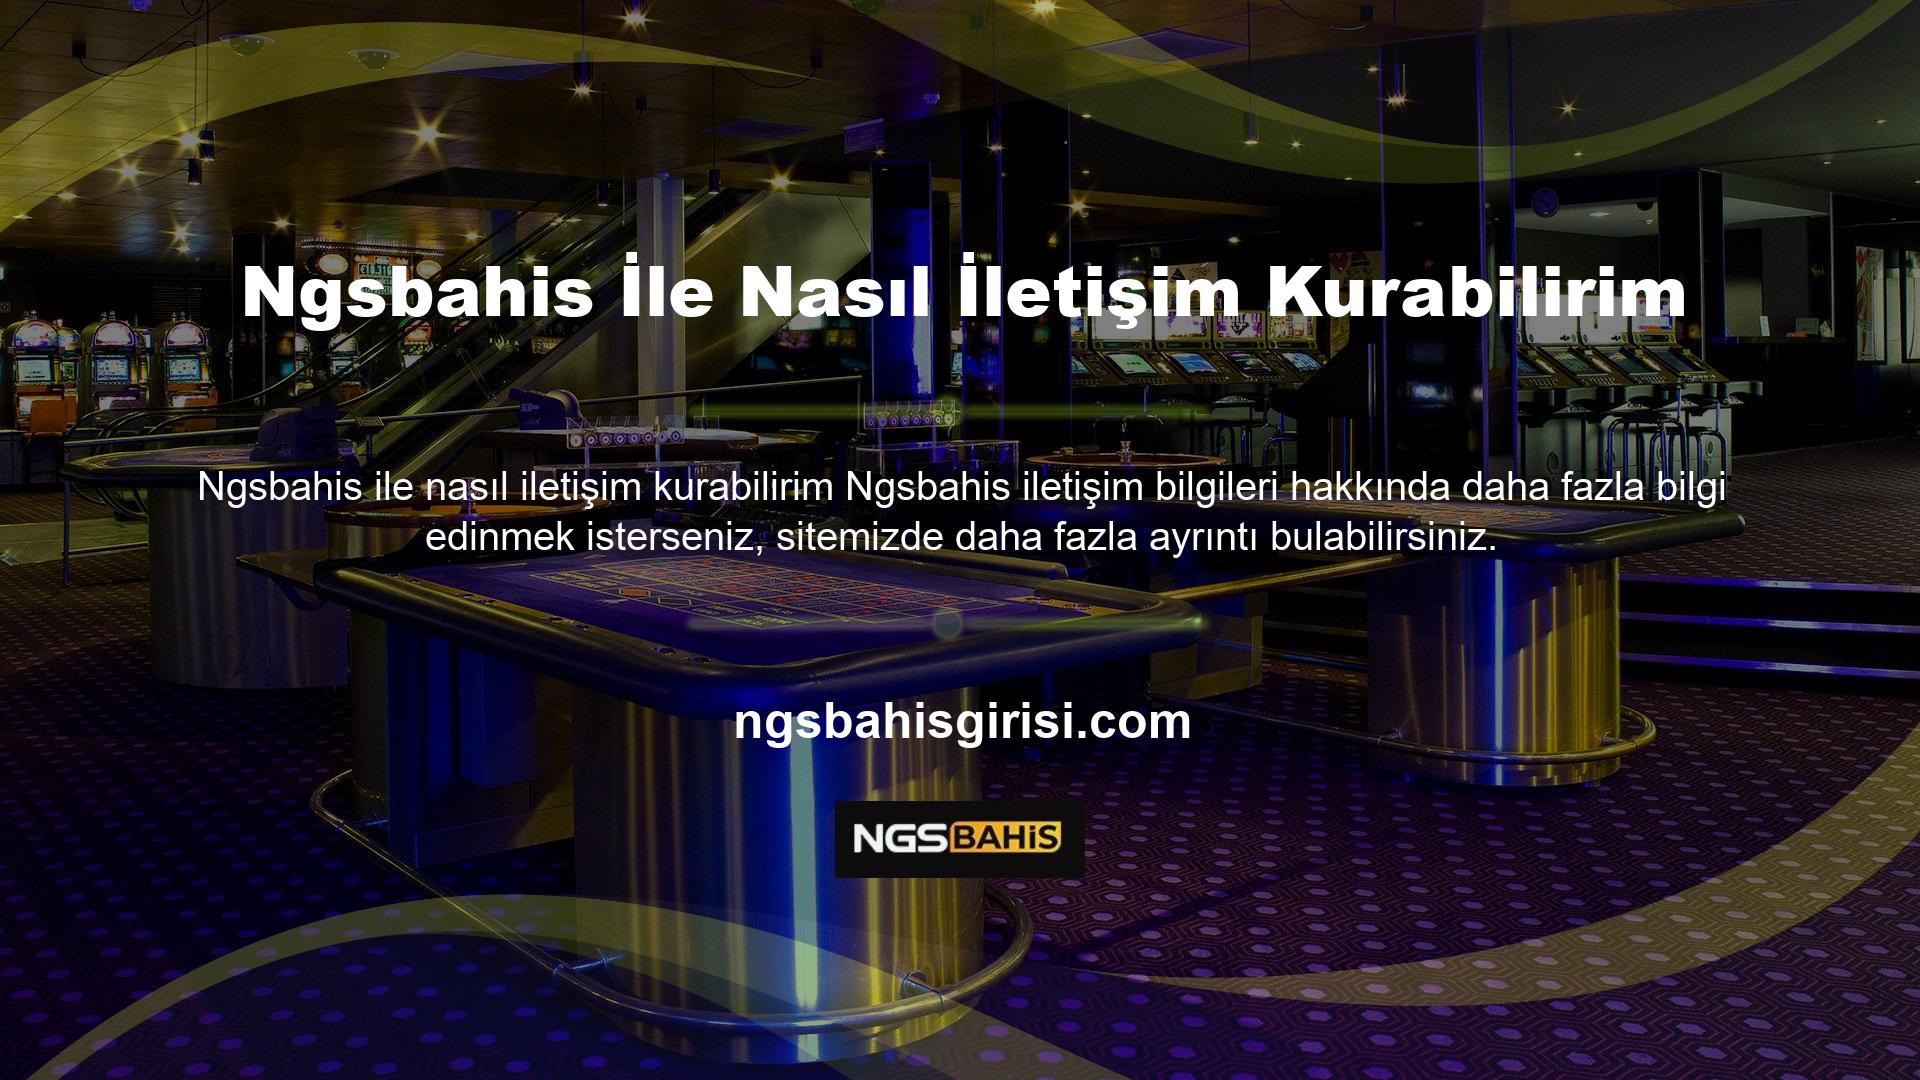 Ülkemizde casino sektörünün önde gelen şirketlerinden olan Ngsbahis, sunduğu çeşitli bahis fırsatları ve yüksek kazanç potansiyeli ile üyelerine cazip avantajlar sunmaktadır